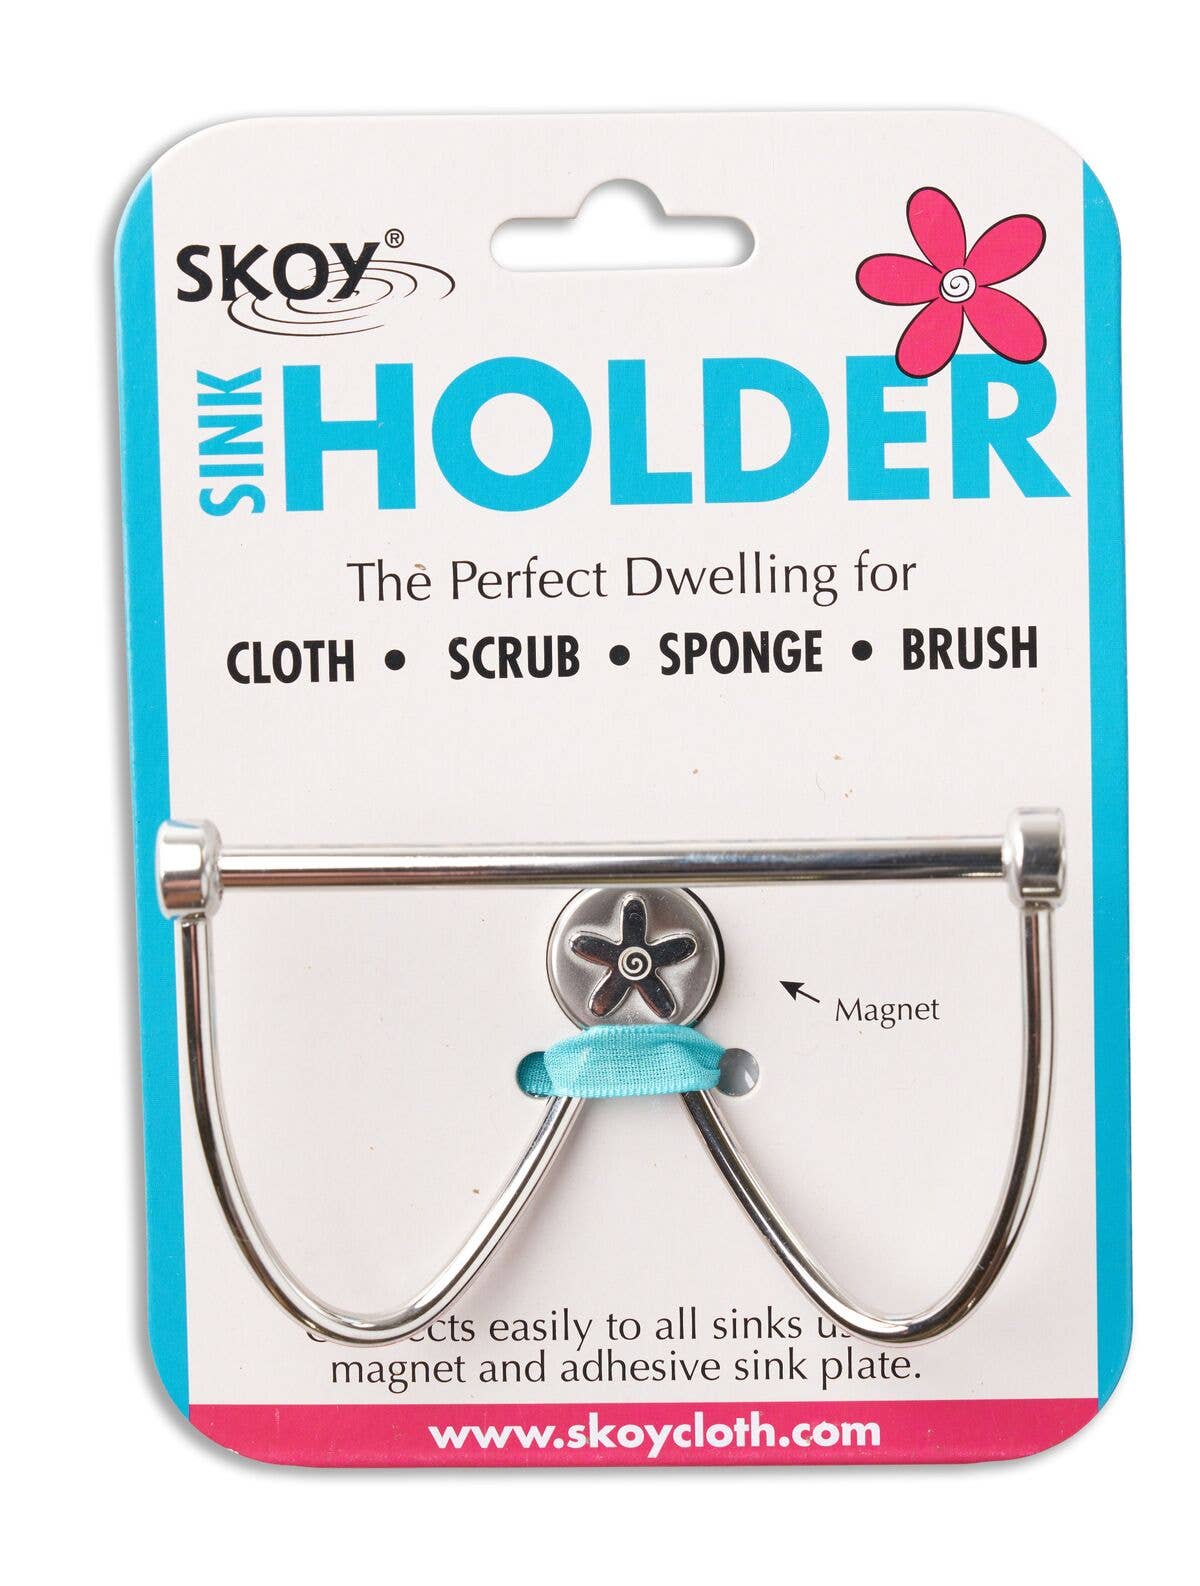 Skoy Holder - Magnetic Sink Holder *